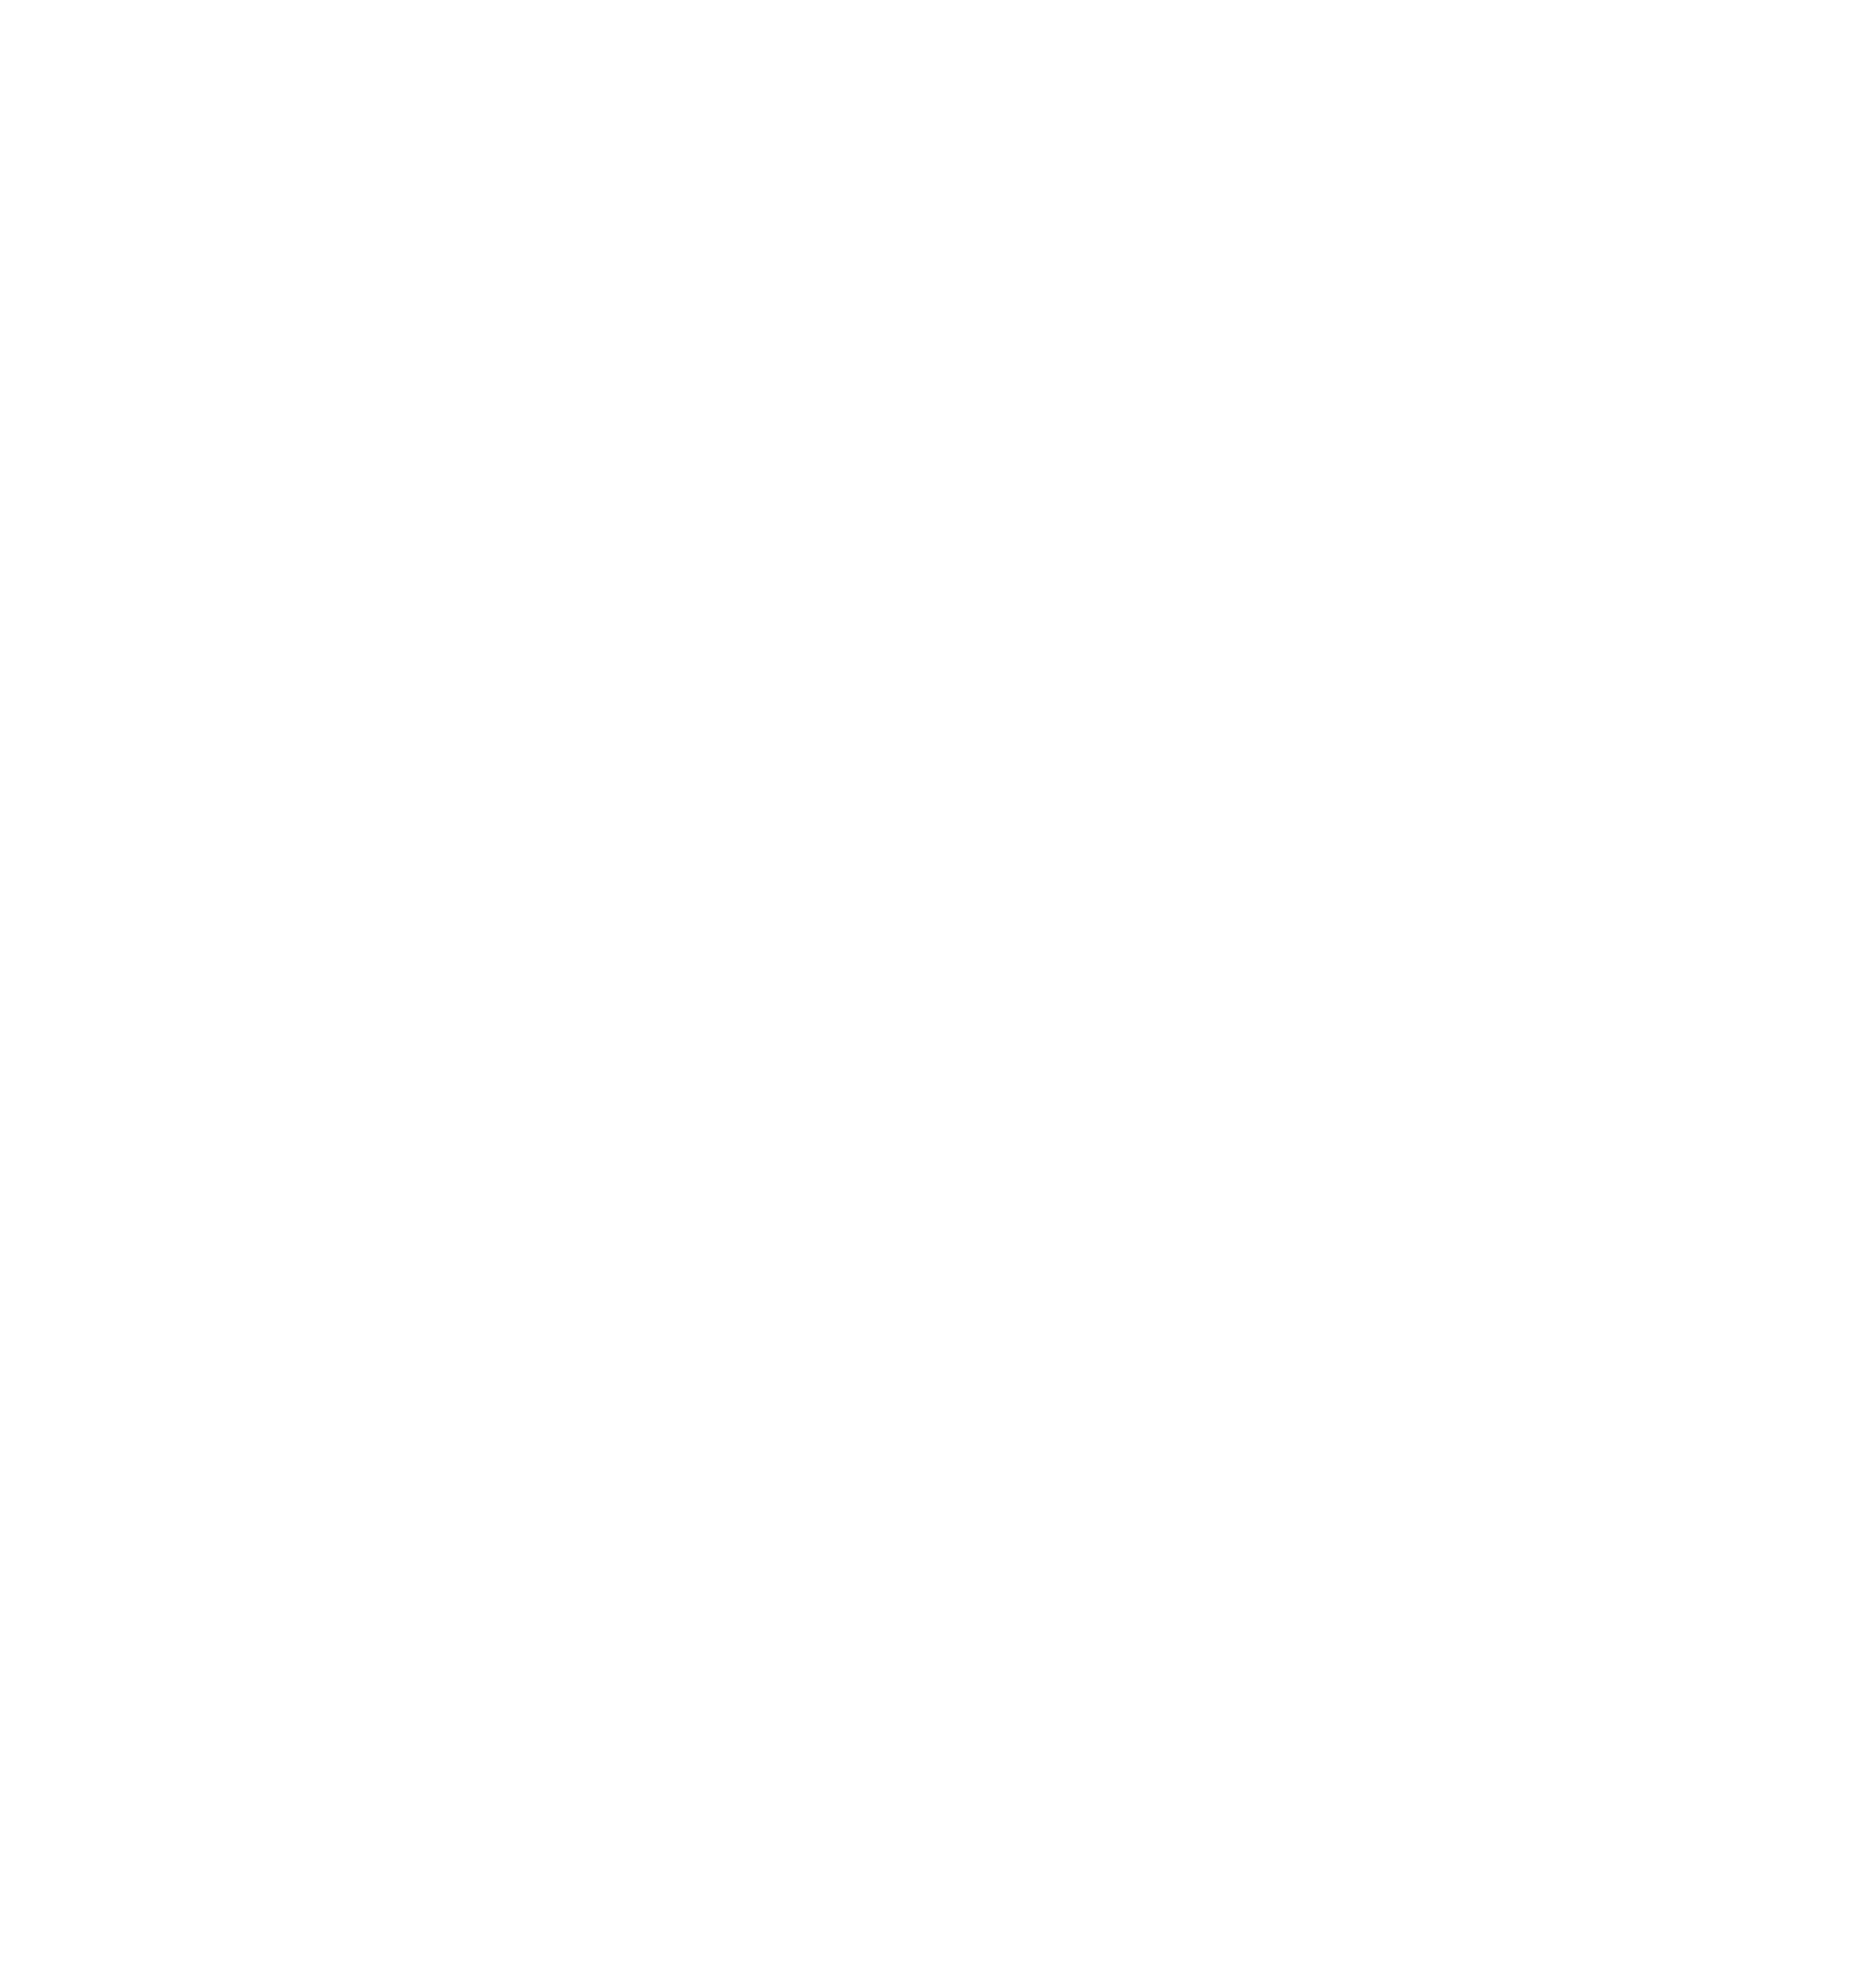 Machin Records